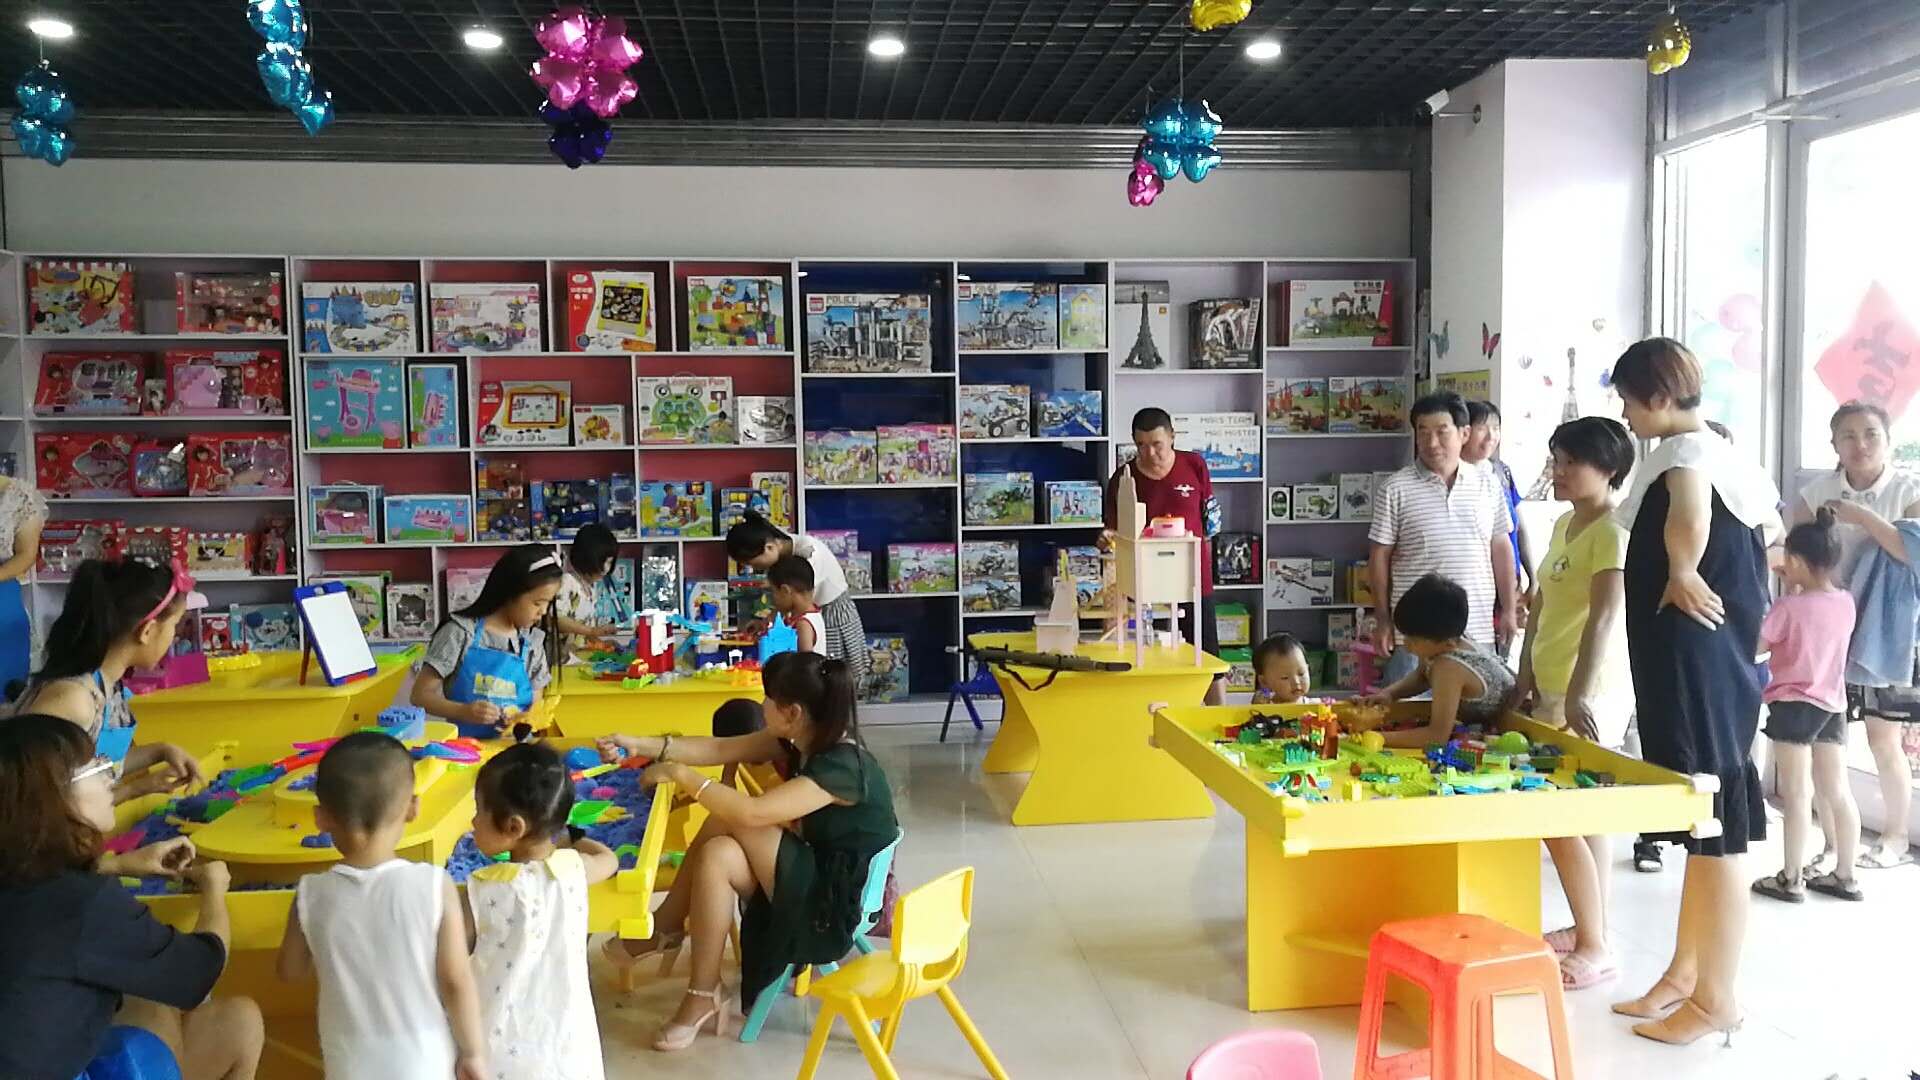 皇家迪智尼在河北邯郸玩具店加盟盛大开业引流活动